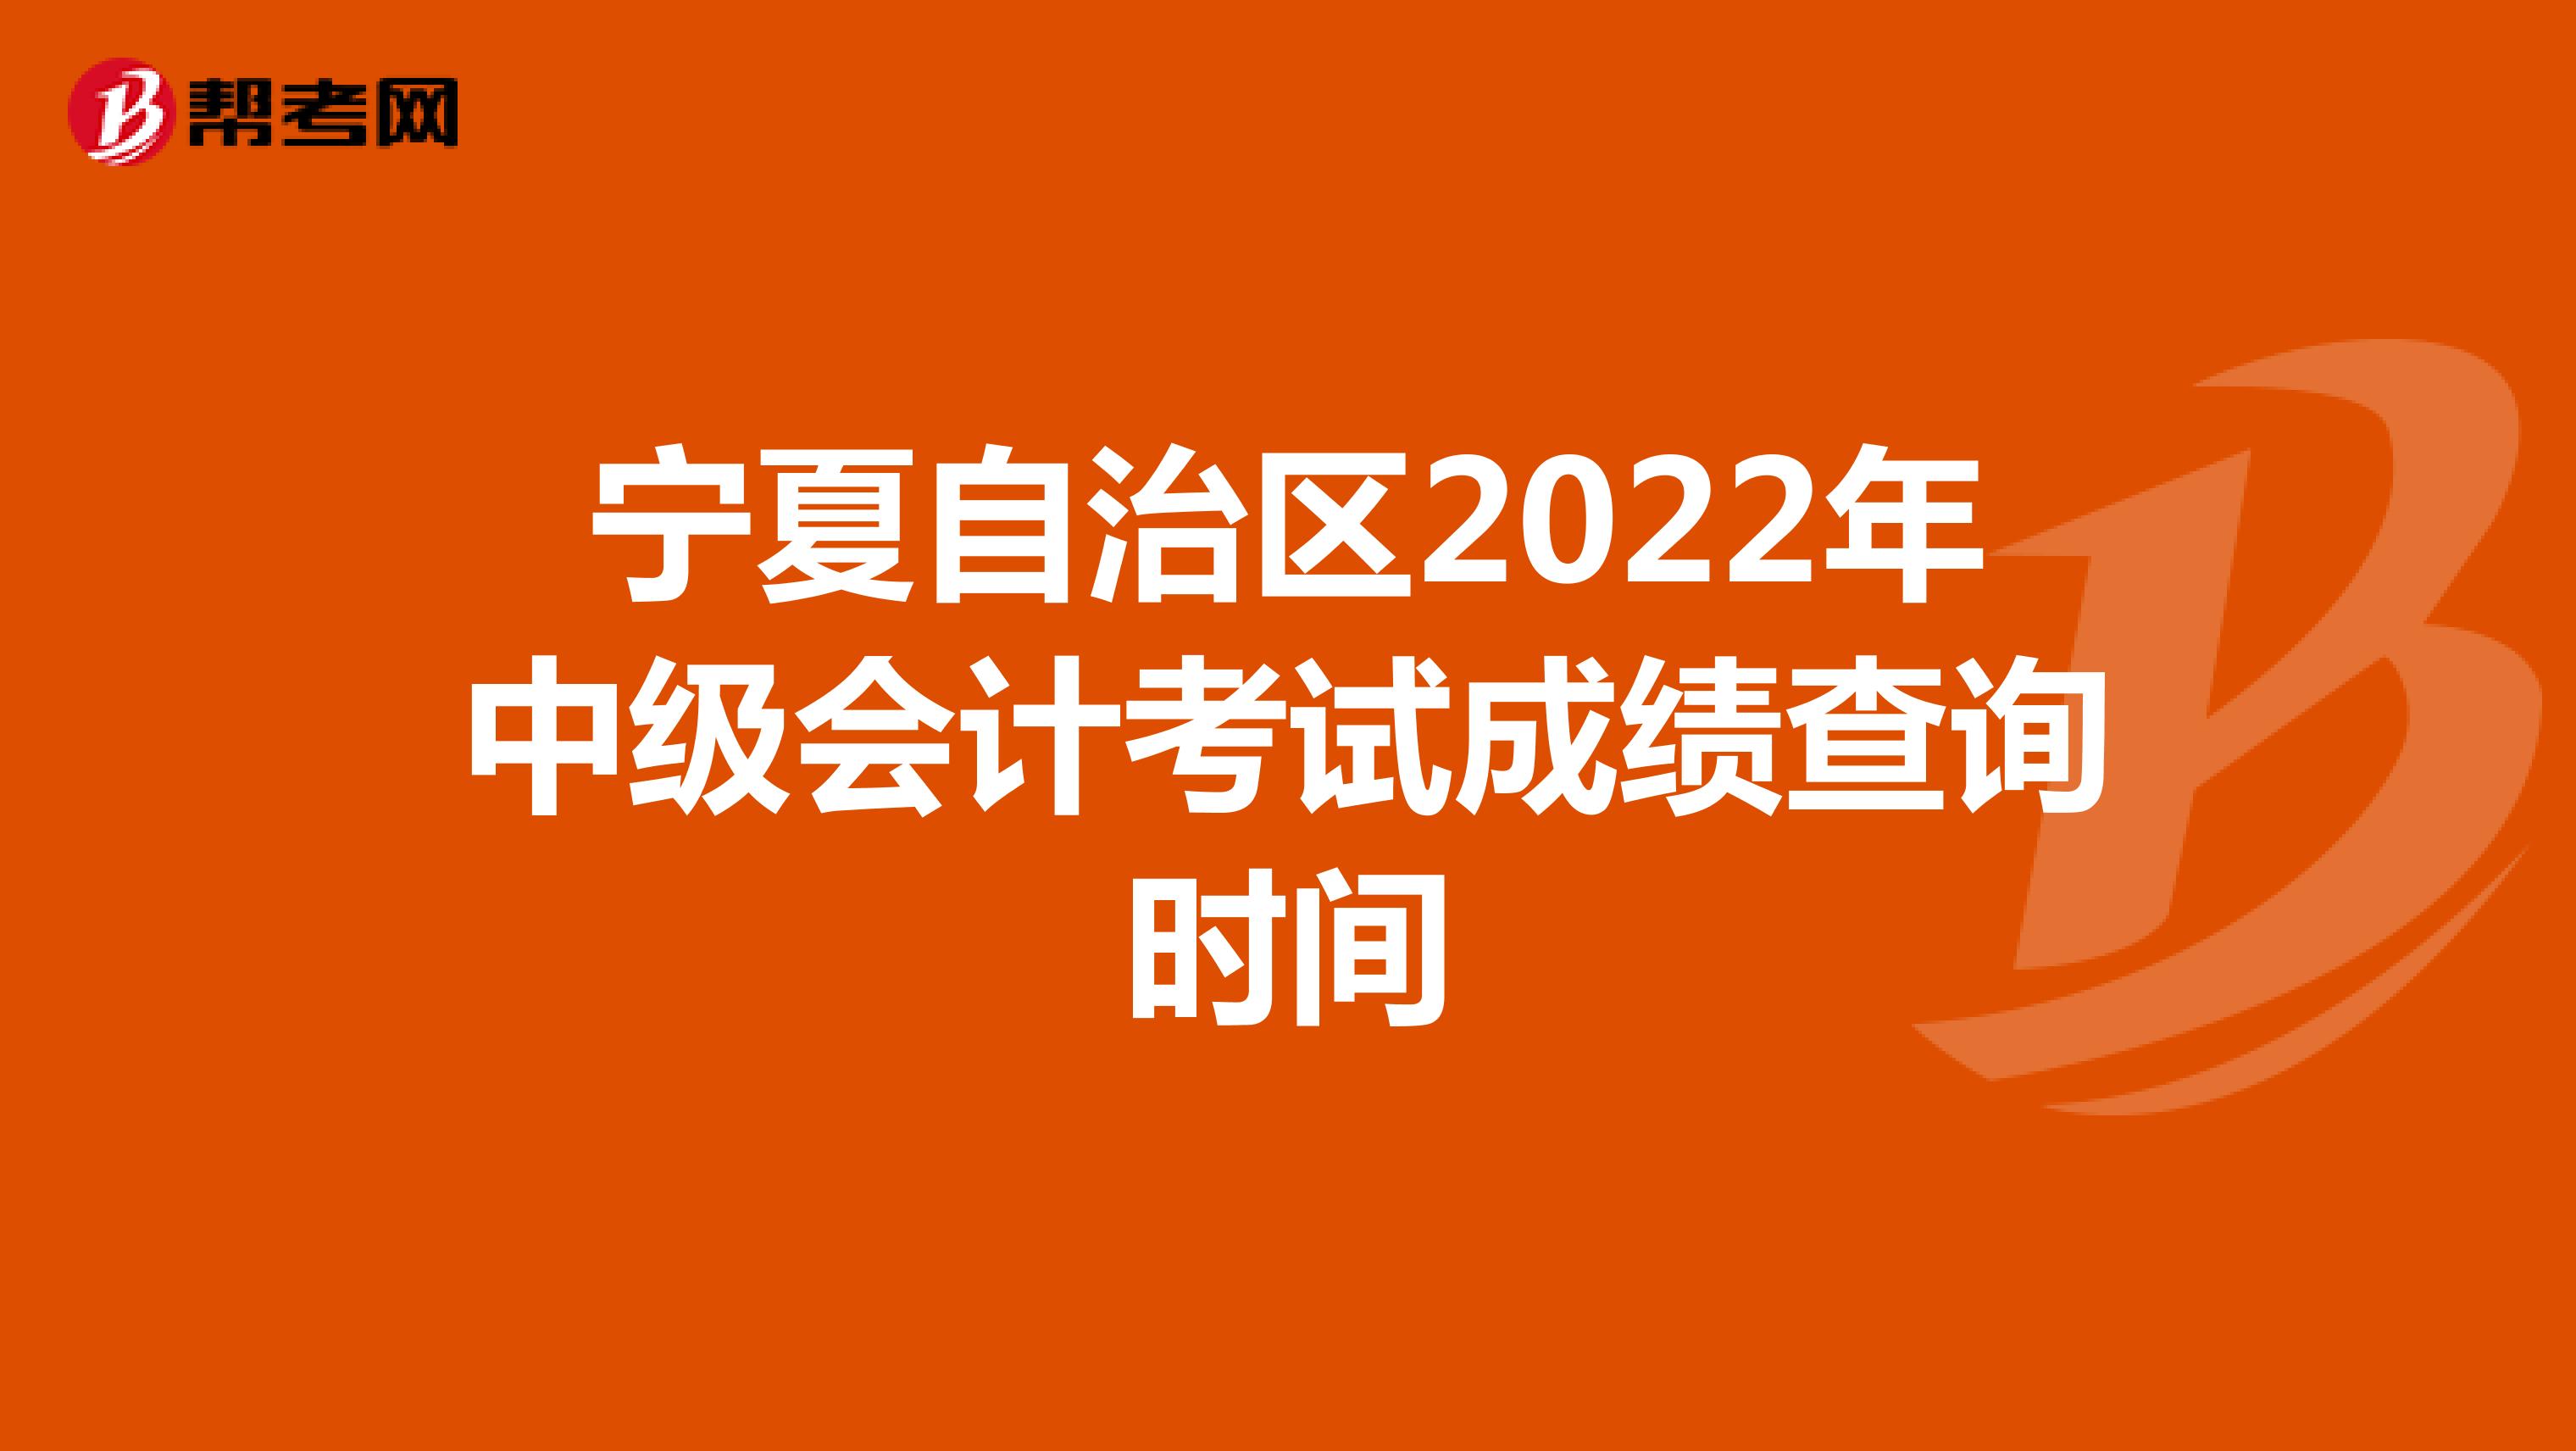 宁夏自治区2022年中级会计考试成绩查询时间